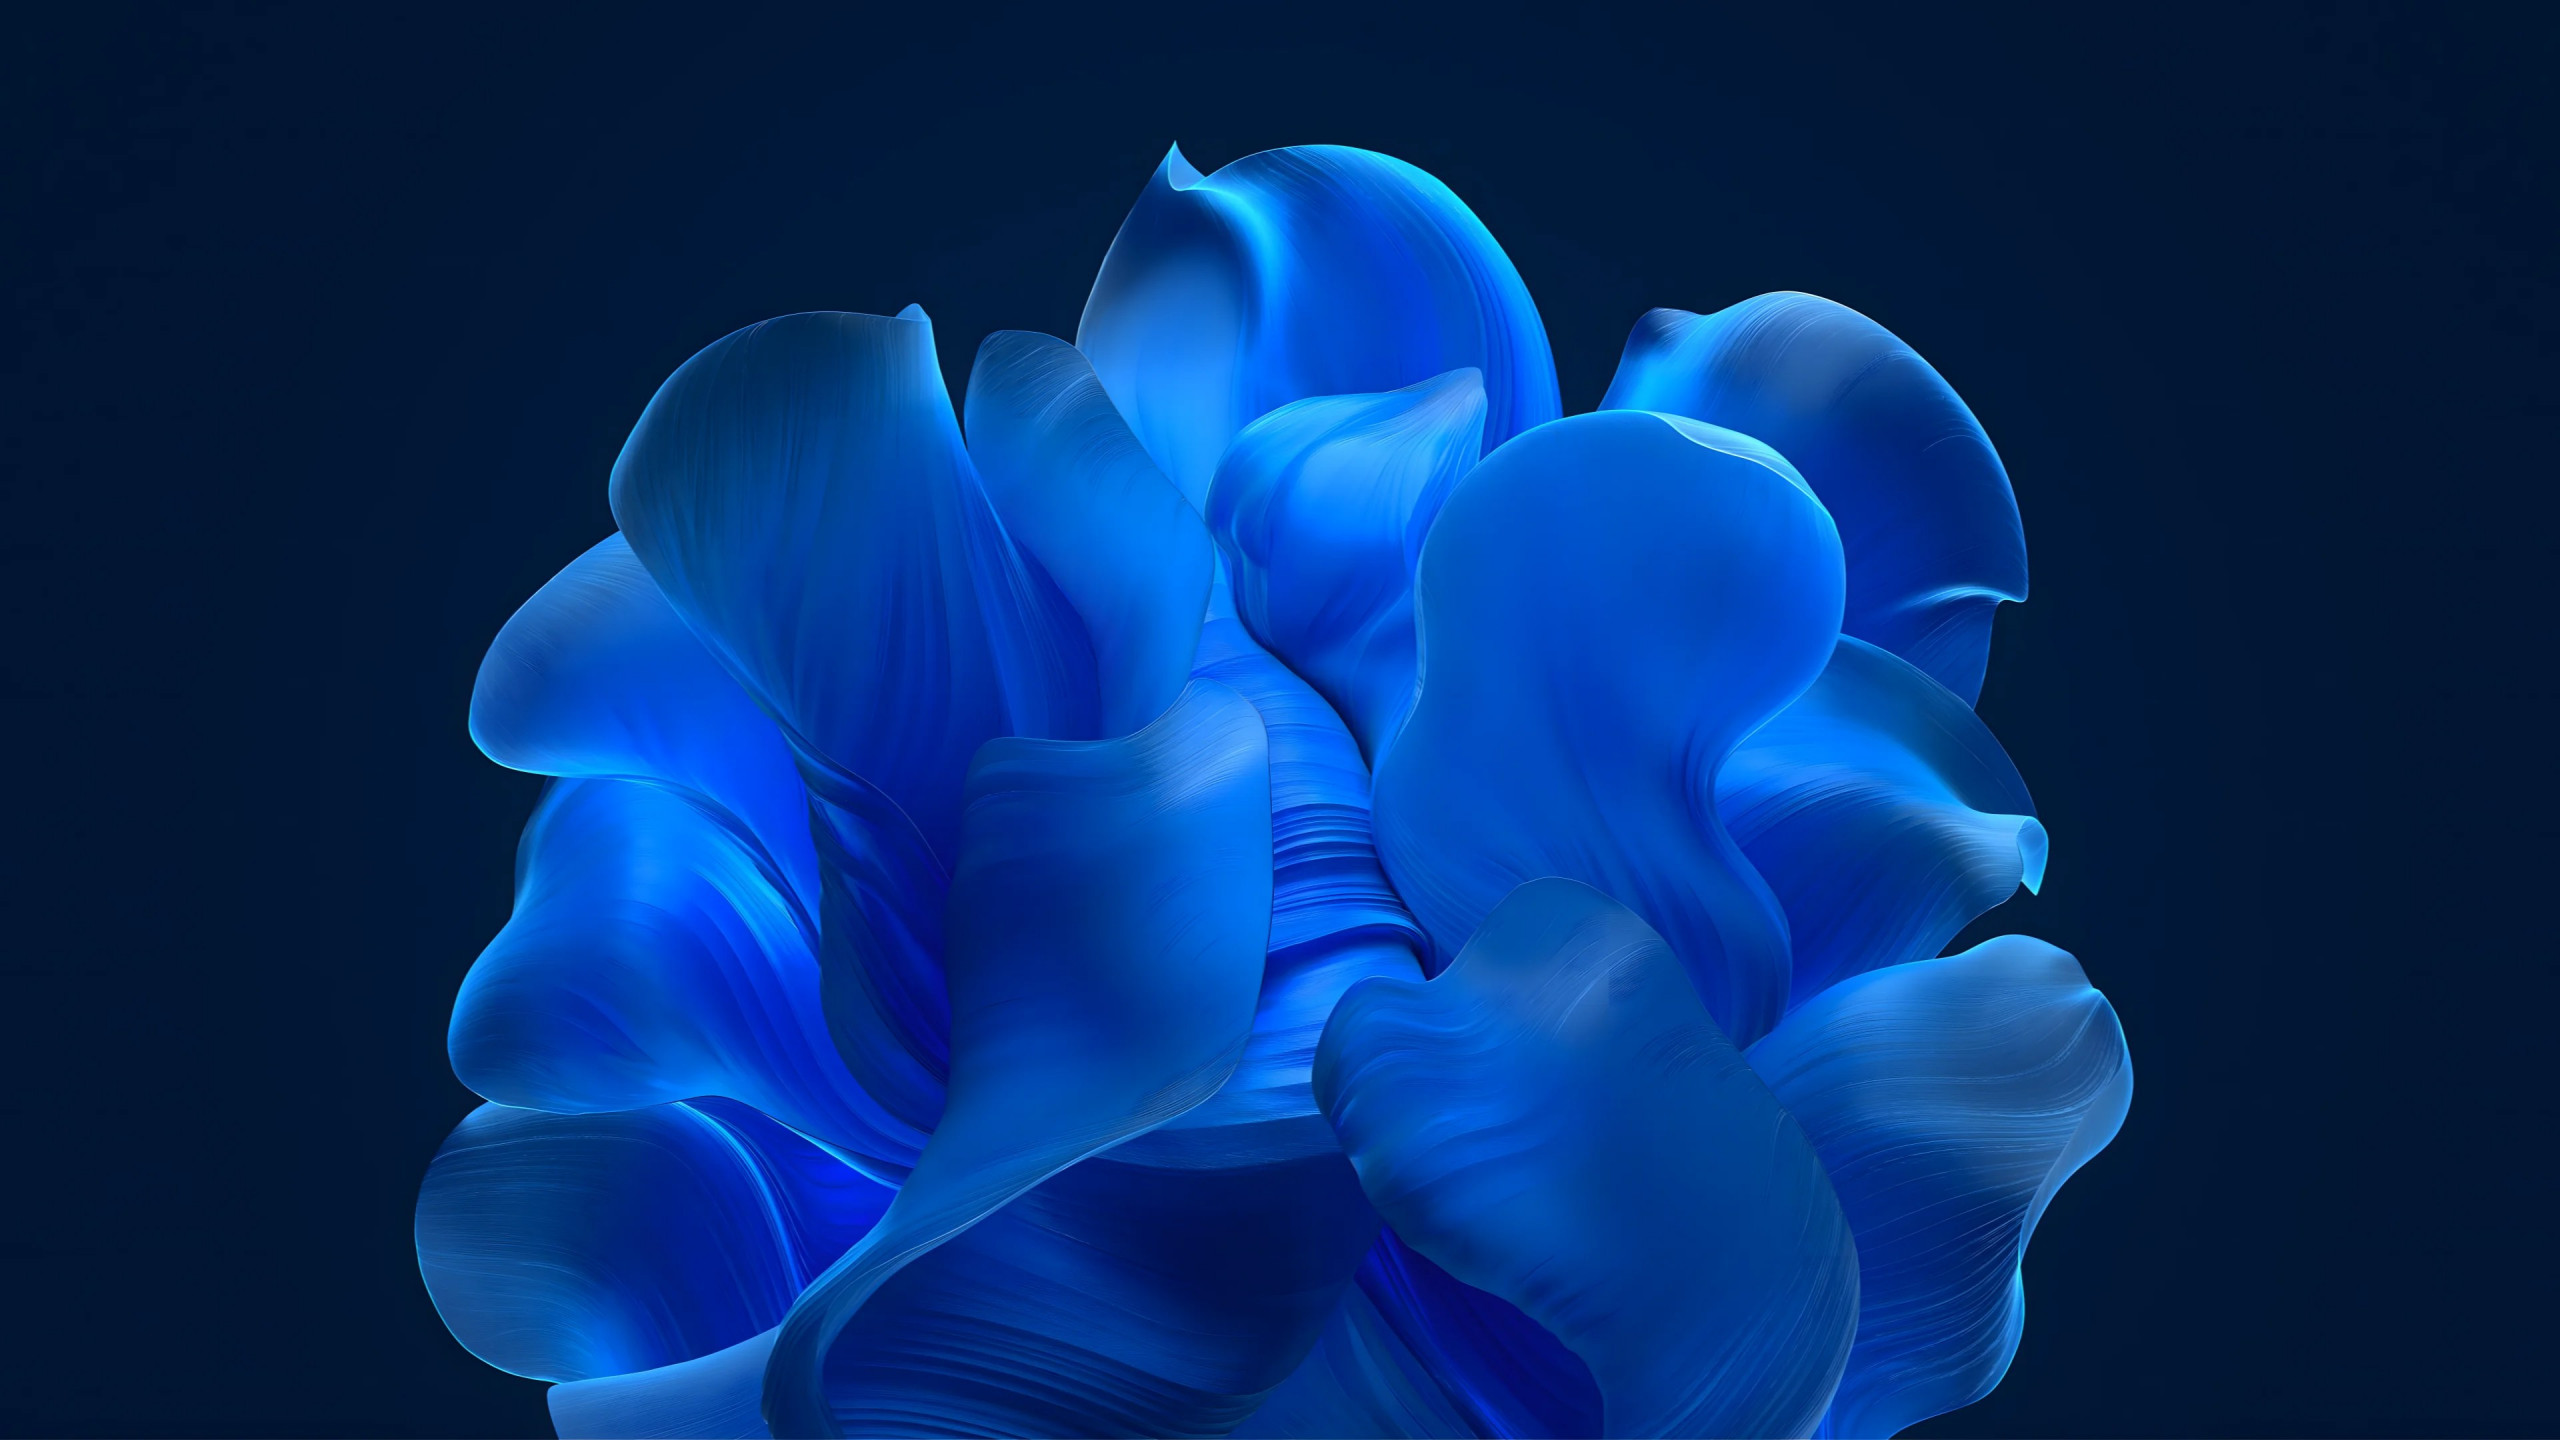 The blue petals wallpaper 2560x1440